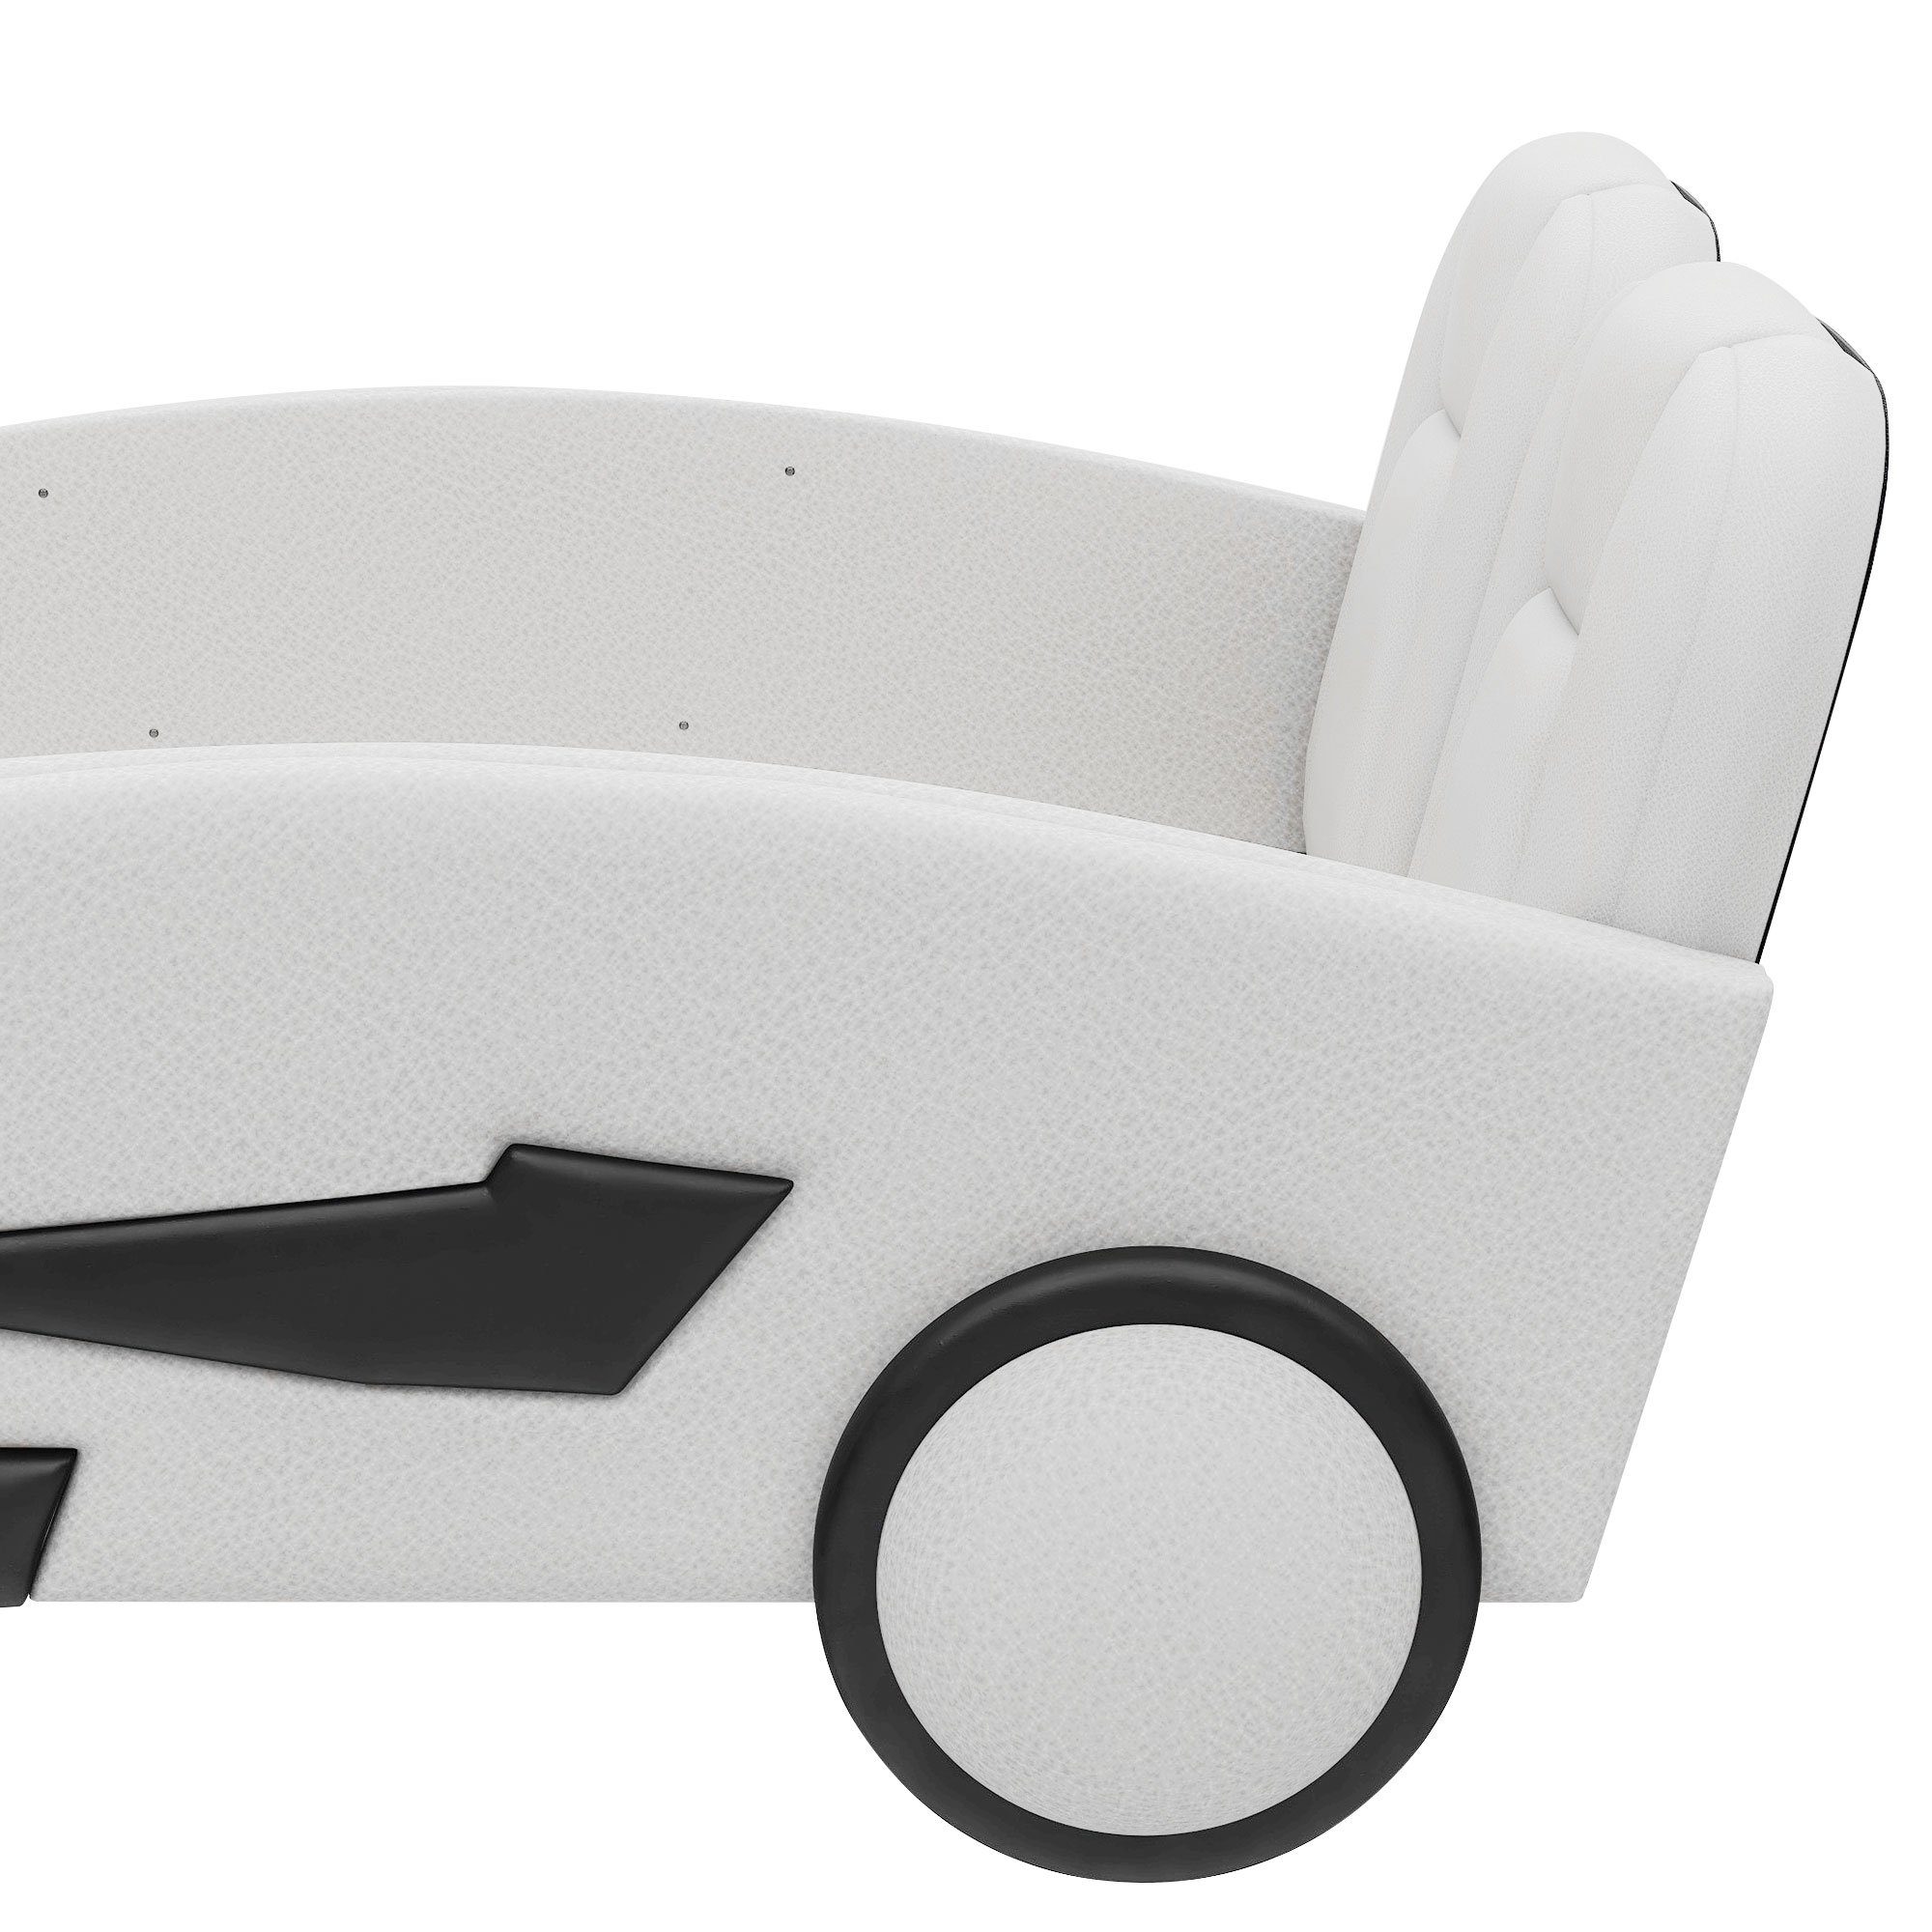 Ulife Autobett Kinderbett Kunstleder Spielbett Rausfallschutz, Flachbett Weiß 90×200cm, mit